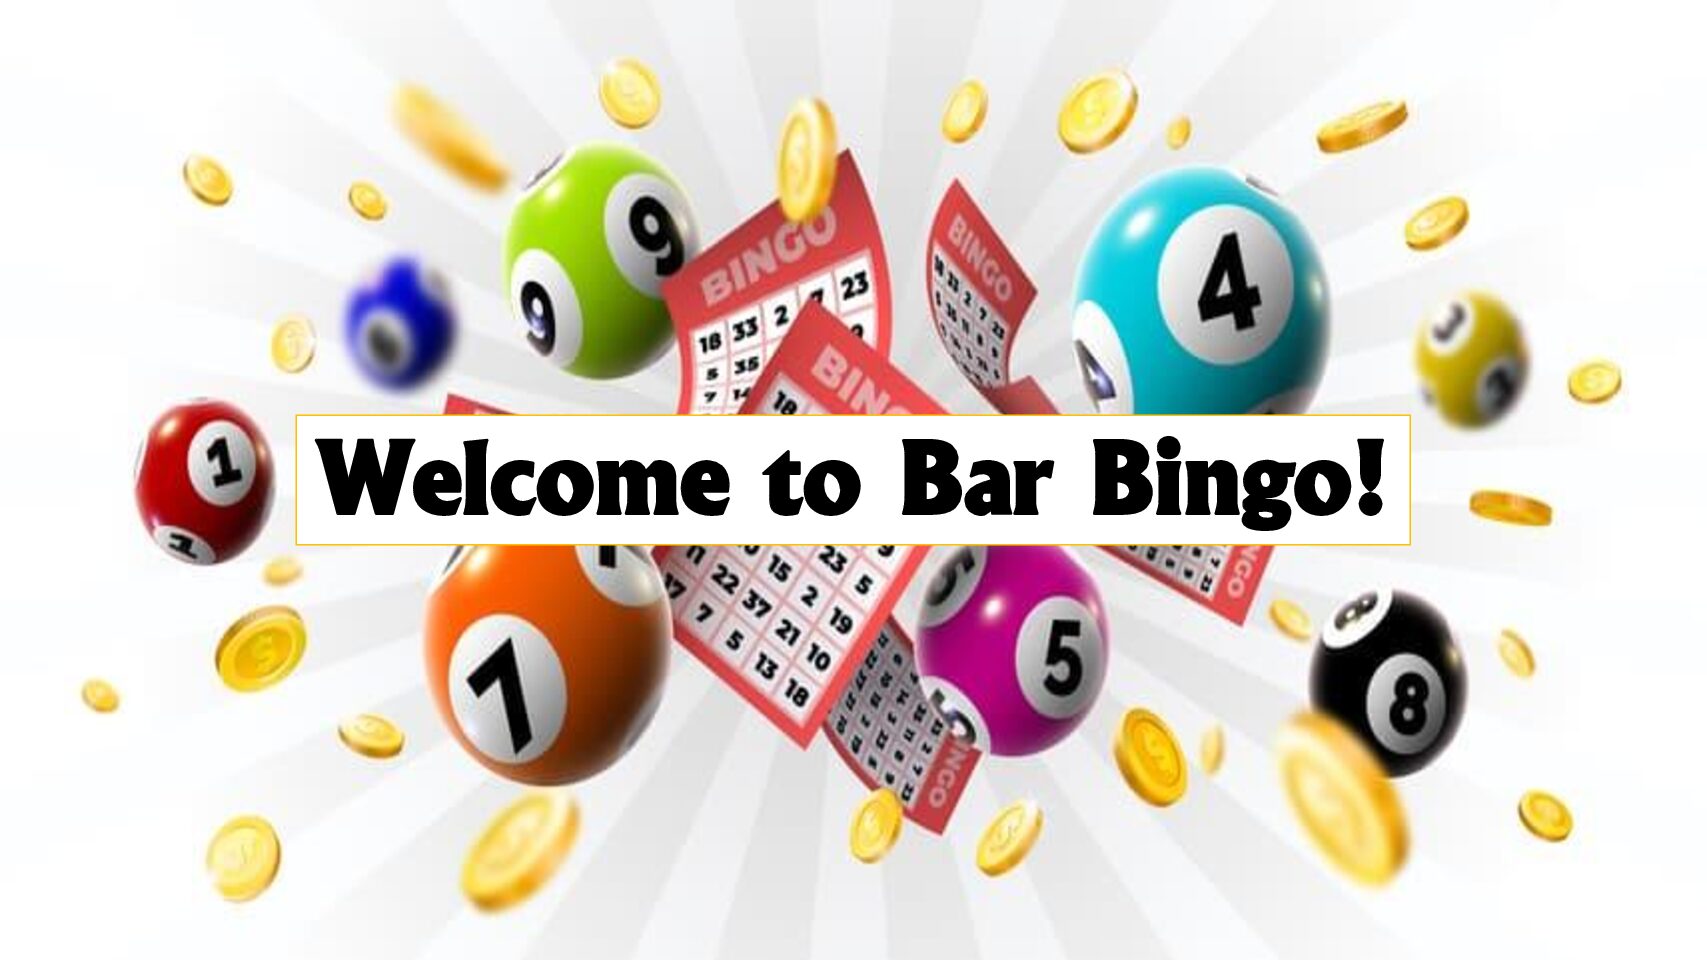 Bar Bingo